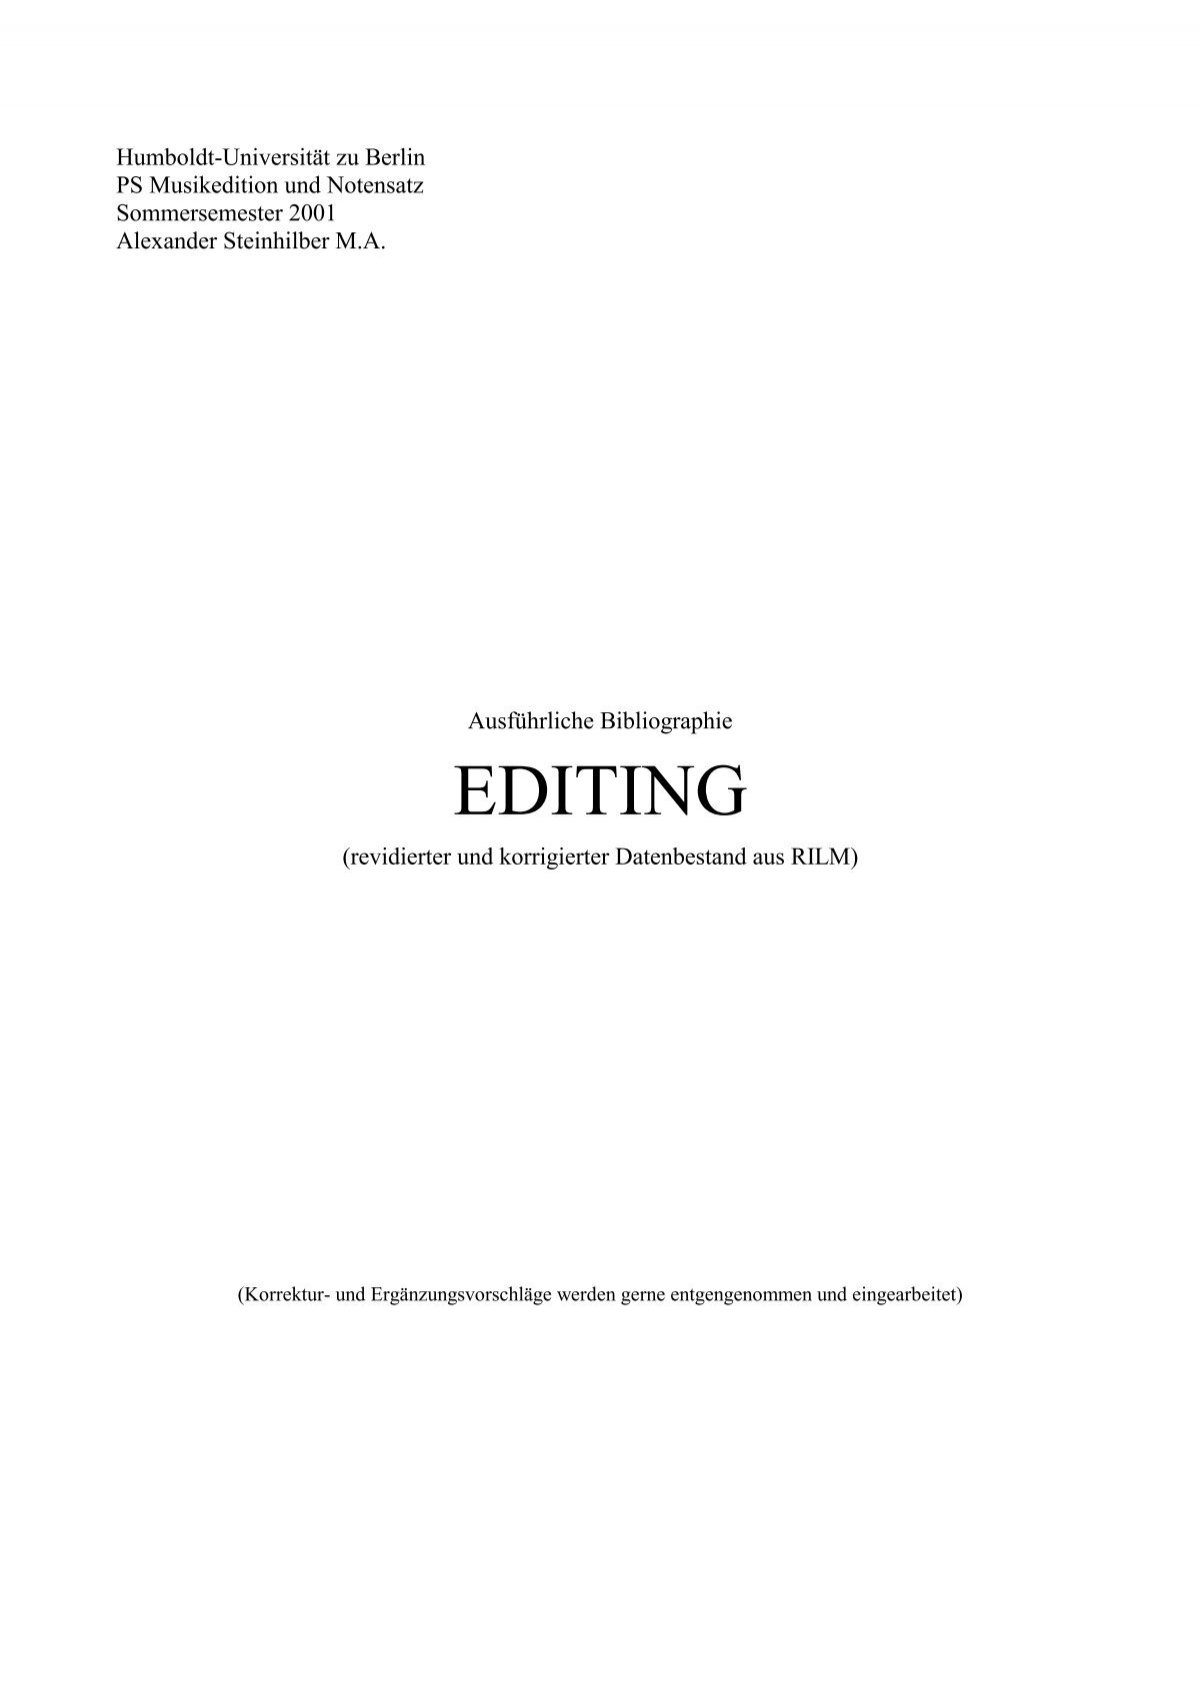 Bibliographie Editing Rilm Alexander Steinhilber